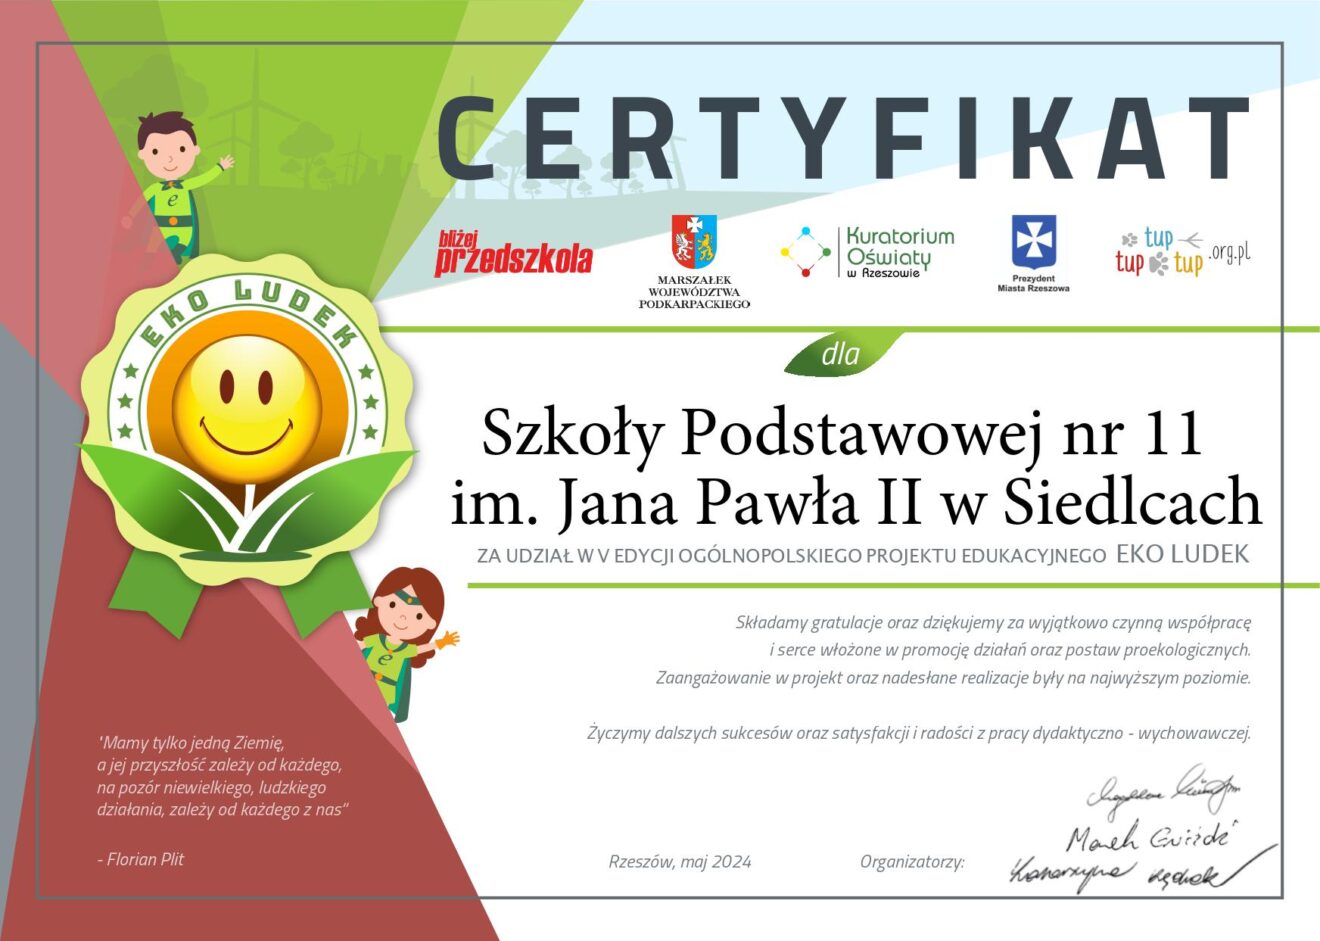 Certyfikat udziału w Ogólnopolskim projekcie edukacyjnym - Eko Ludek